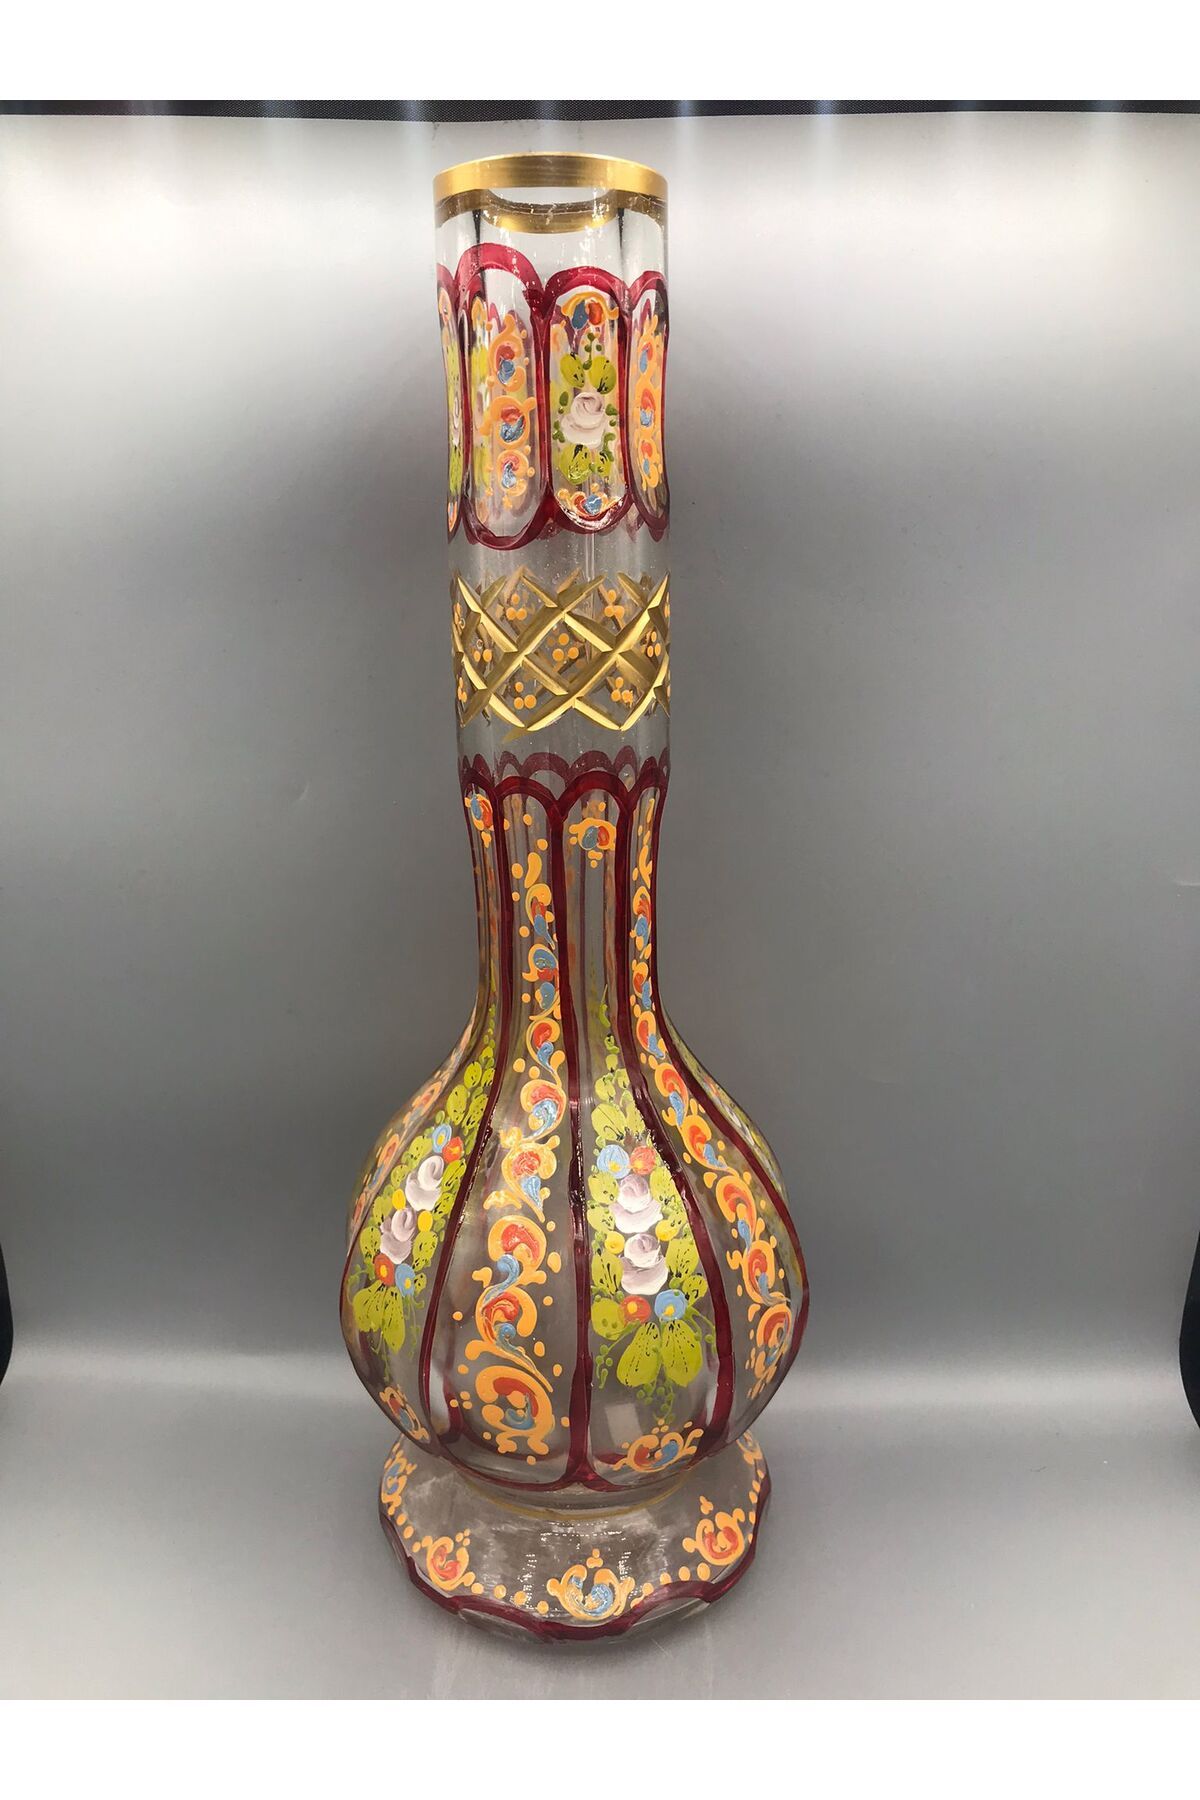 MeMy Design Üfleme Cam Murano El İşçiliği Özel Tasarım Dekoratif Cam Kesme Vazo (40 cm)